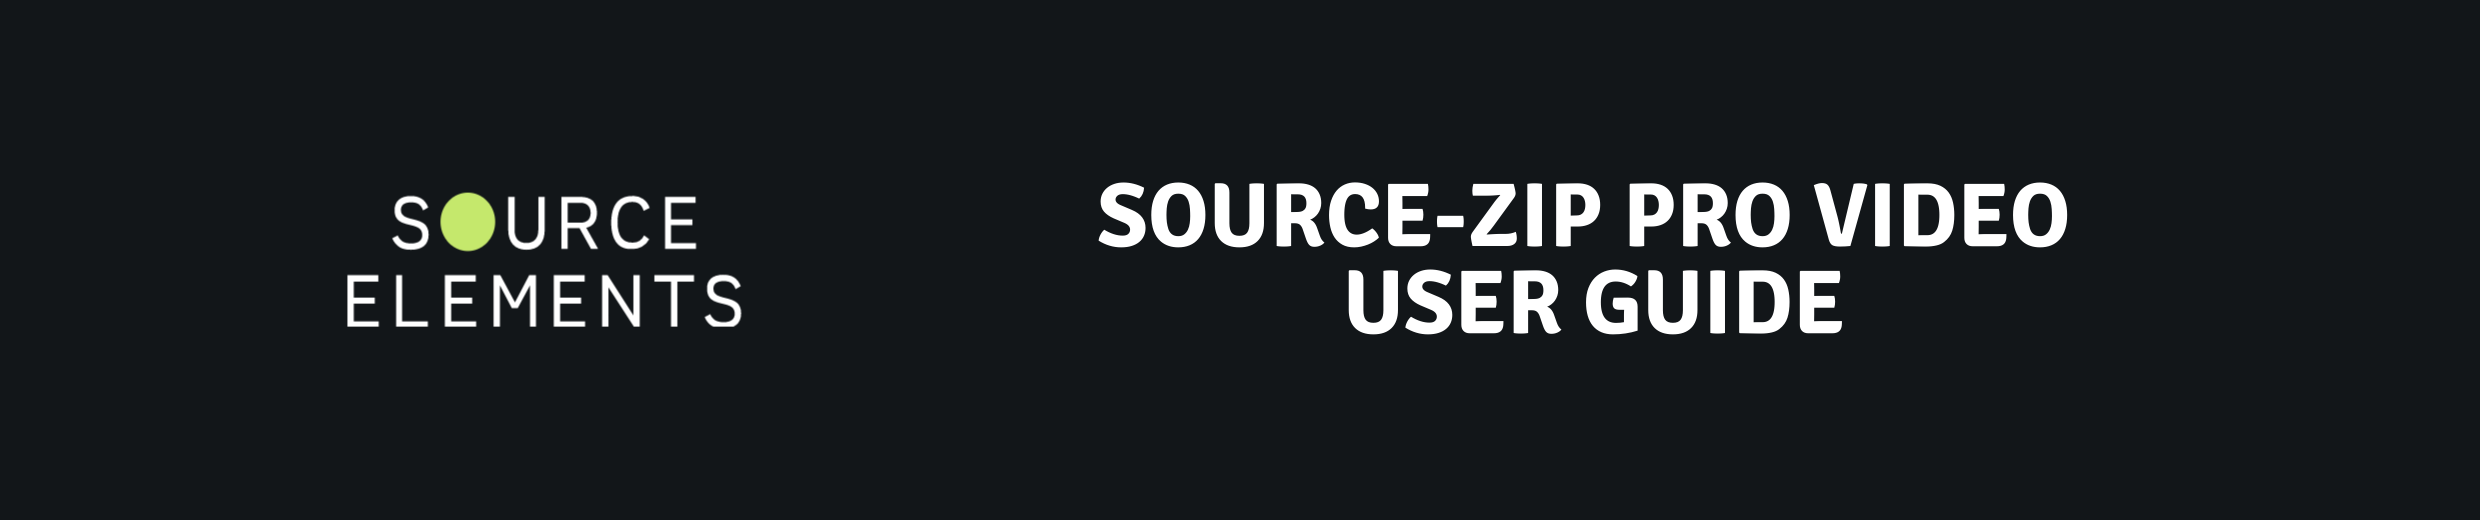 Source-Zip Pro Video User Guide